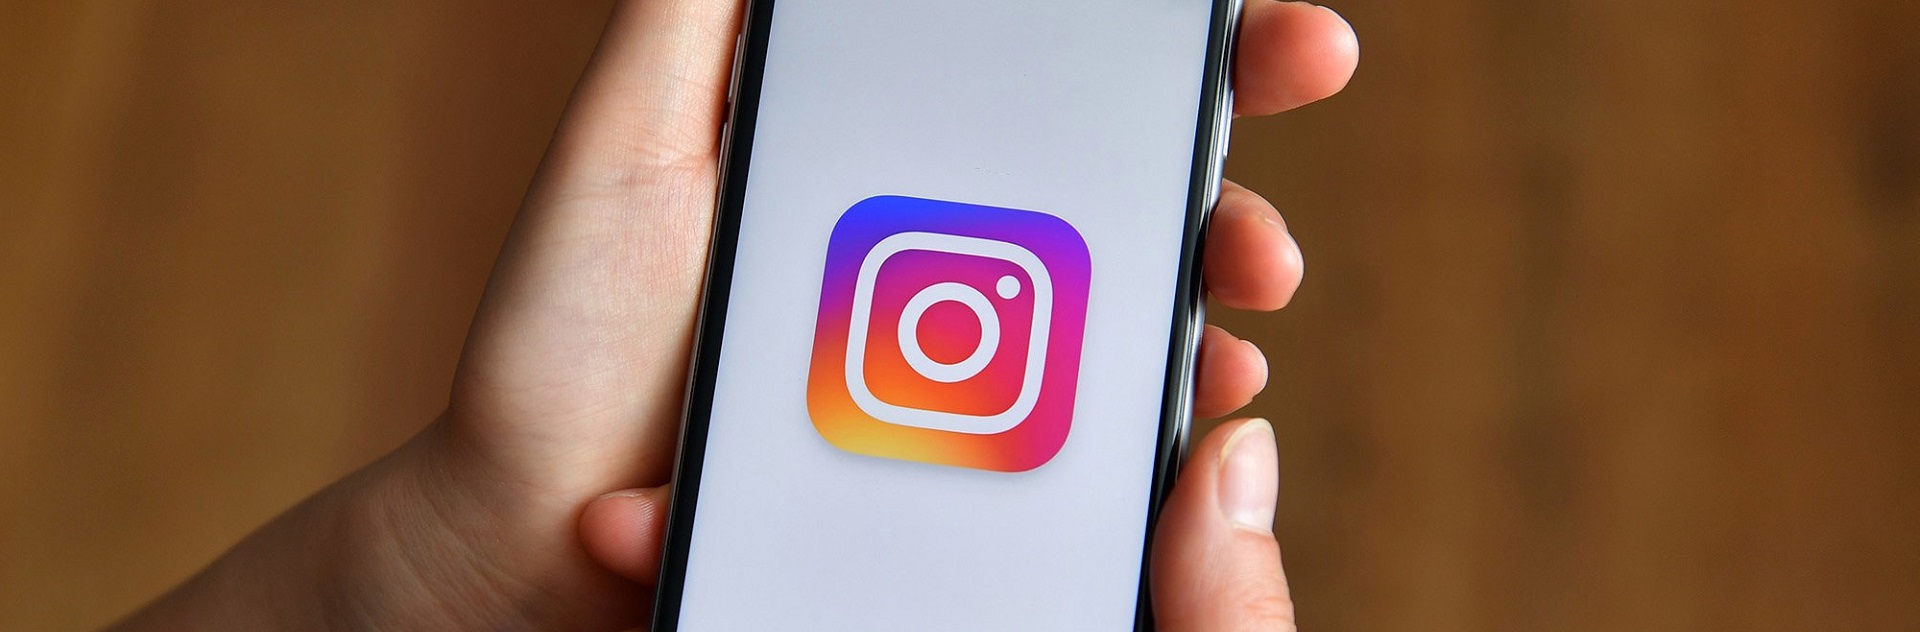 10 bí quyết tiếp thị khi kinh doanh trên Instagram (P1)